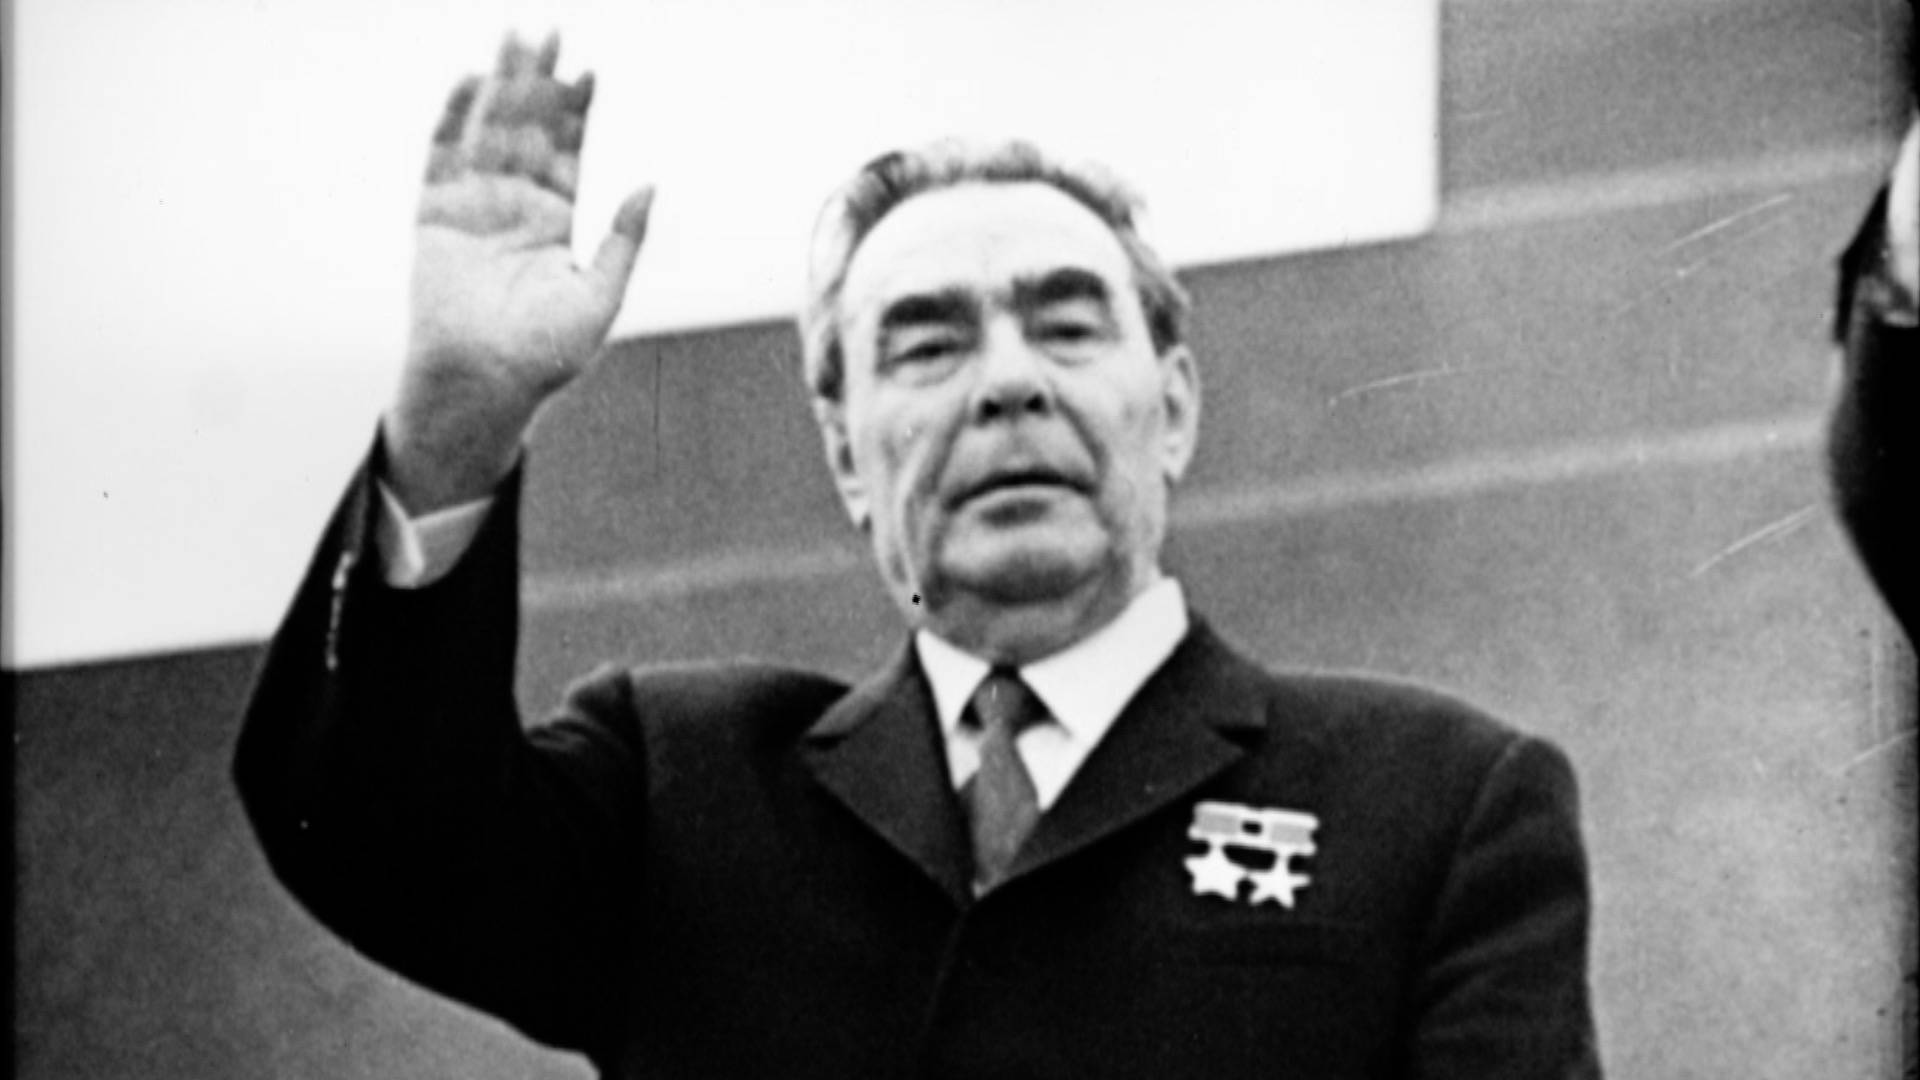 Sezon nou „Adevăruri despre trecut”, la TVR 1. Primul episod: „Ceauşescu-Brejnev”